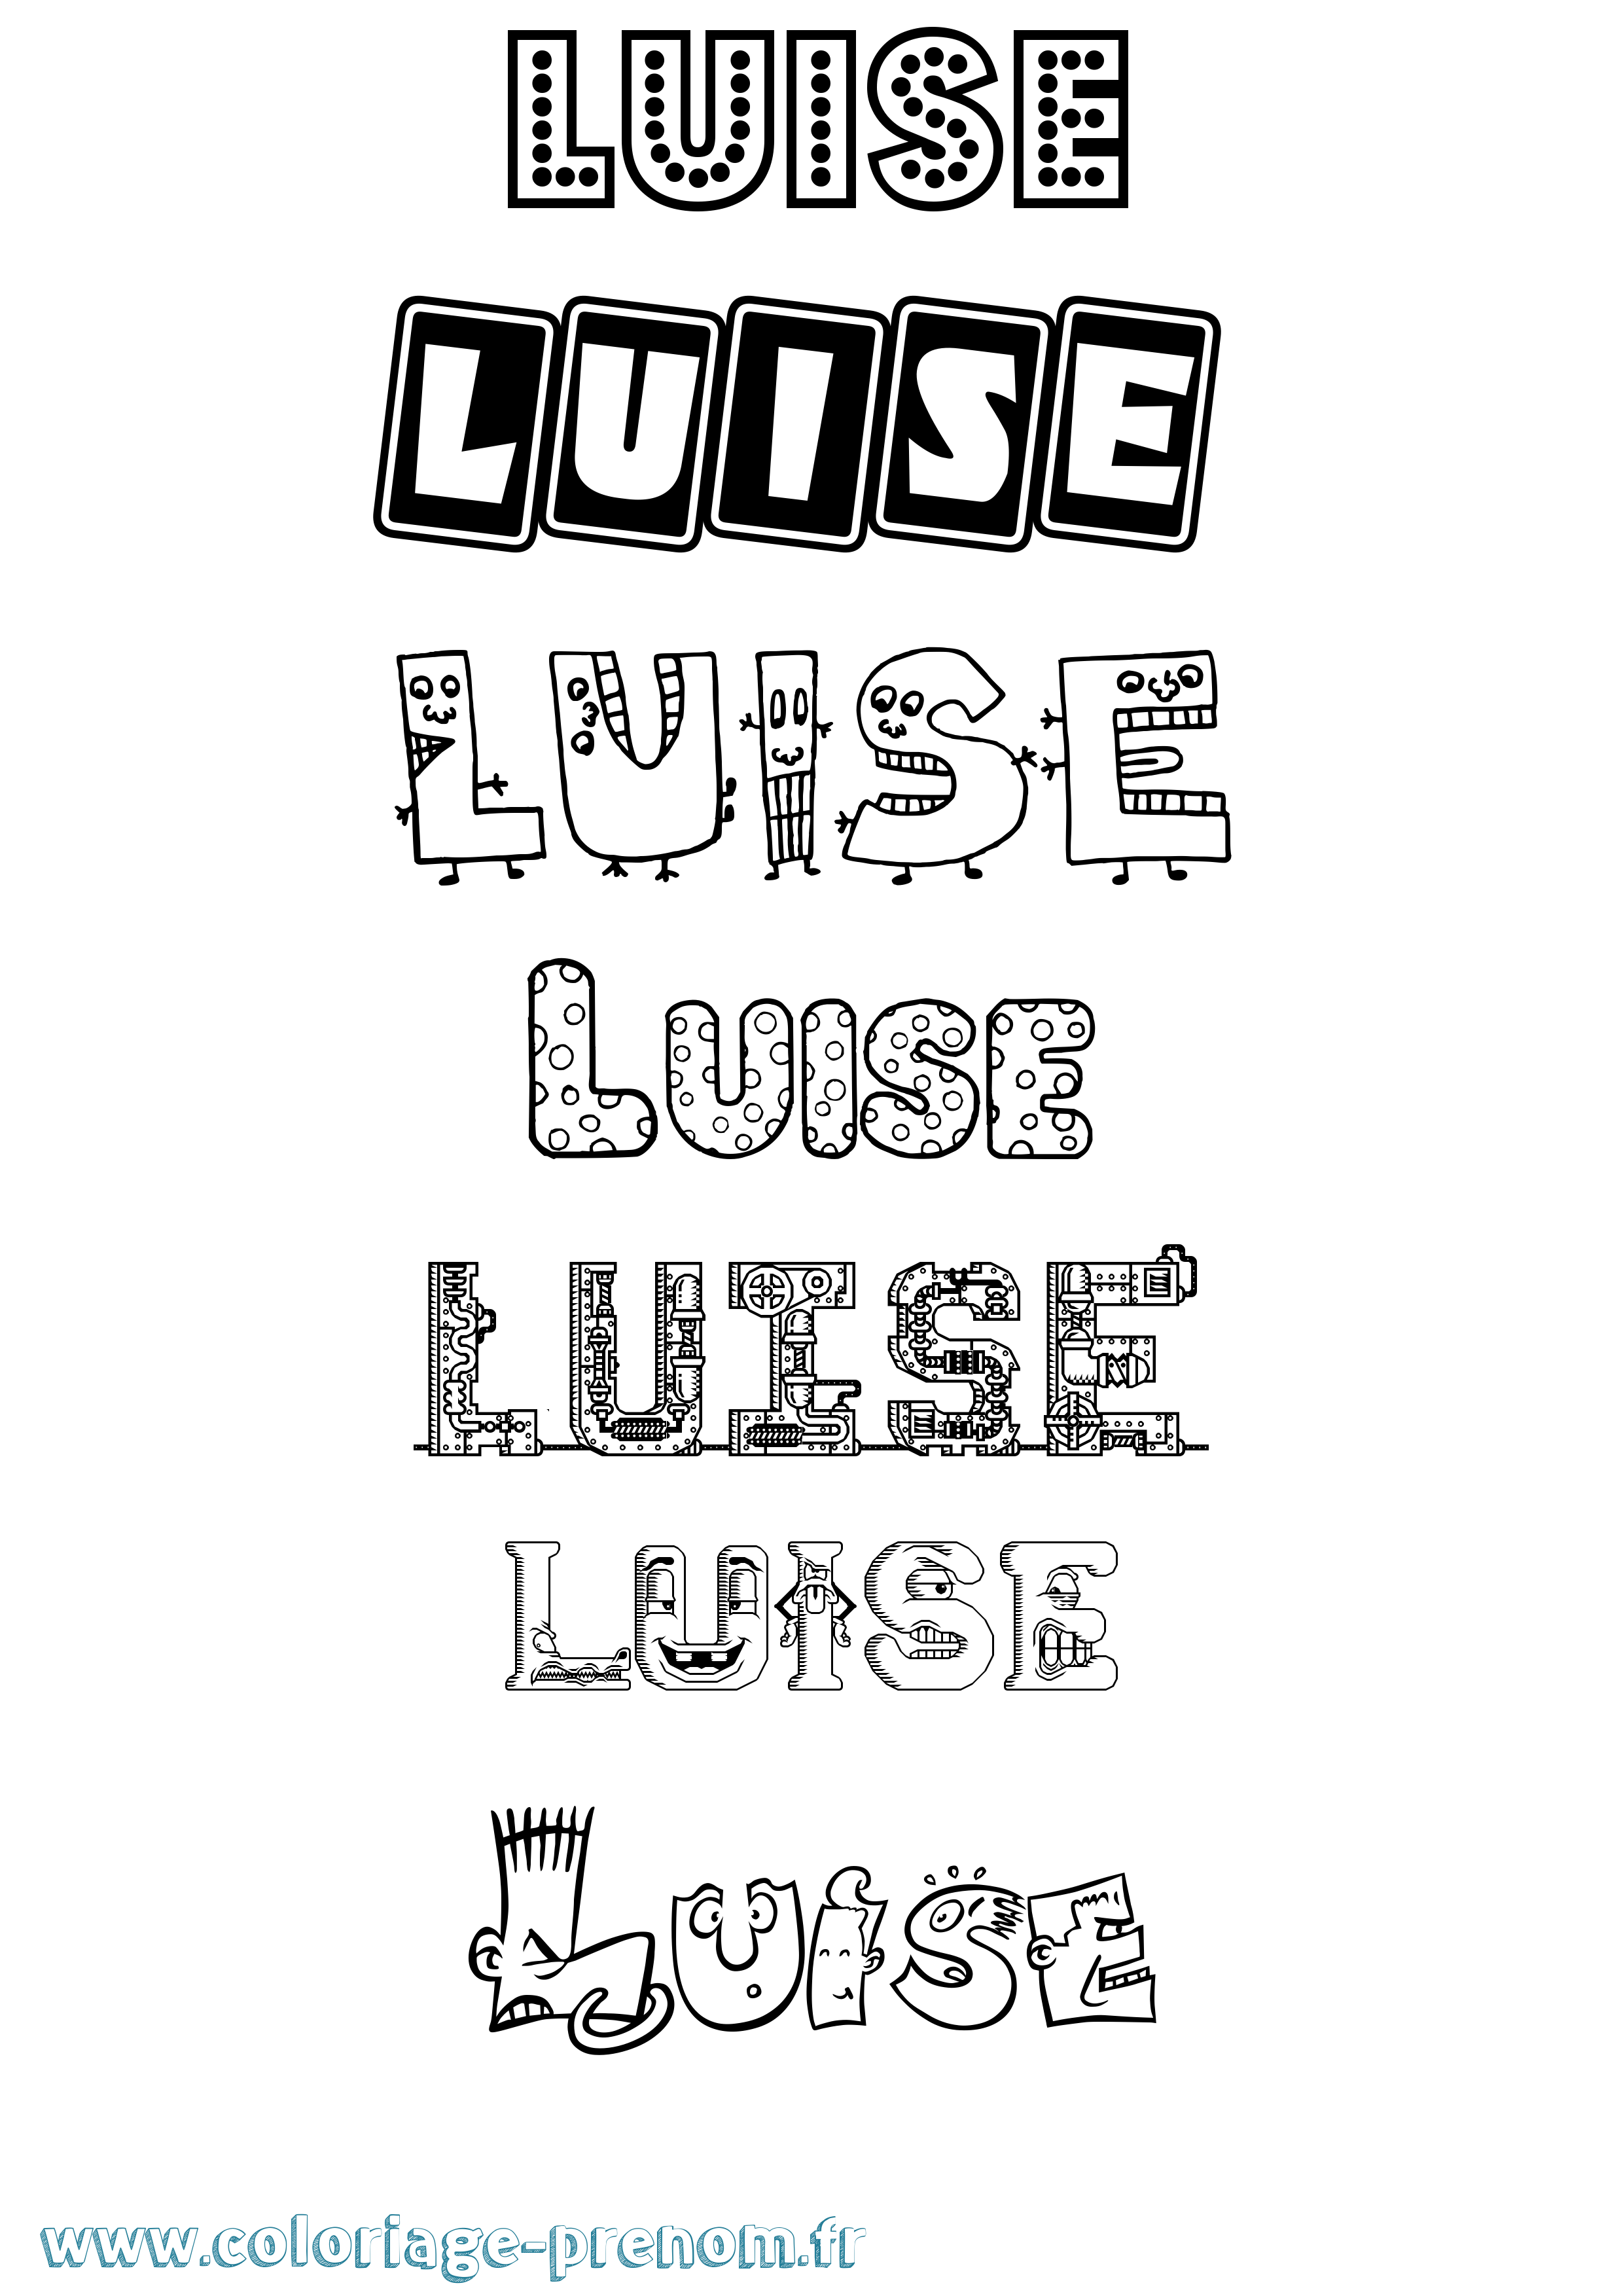 Coloriage prénom Luise Fun